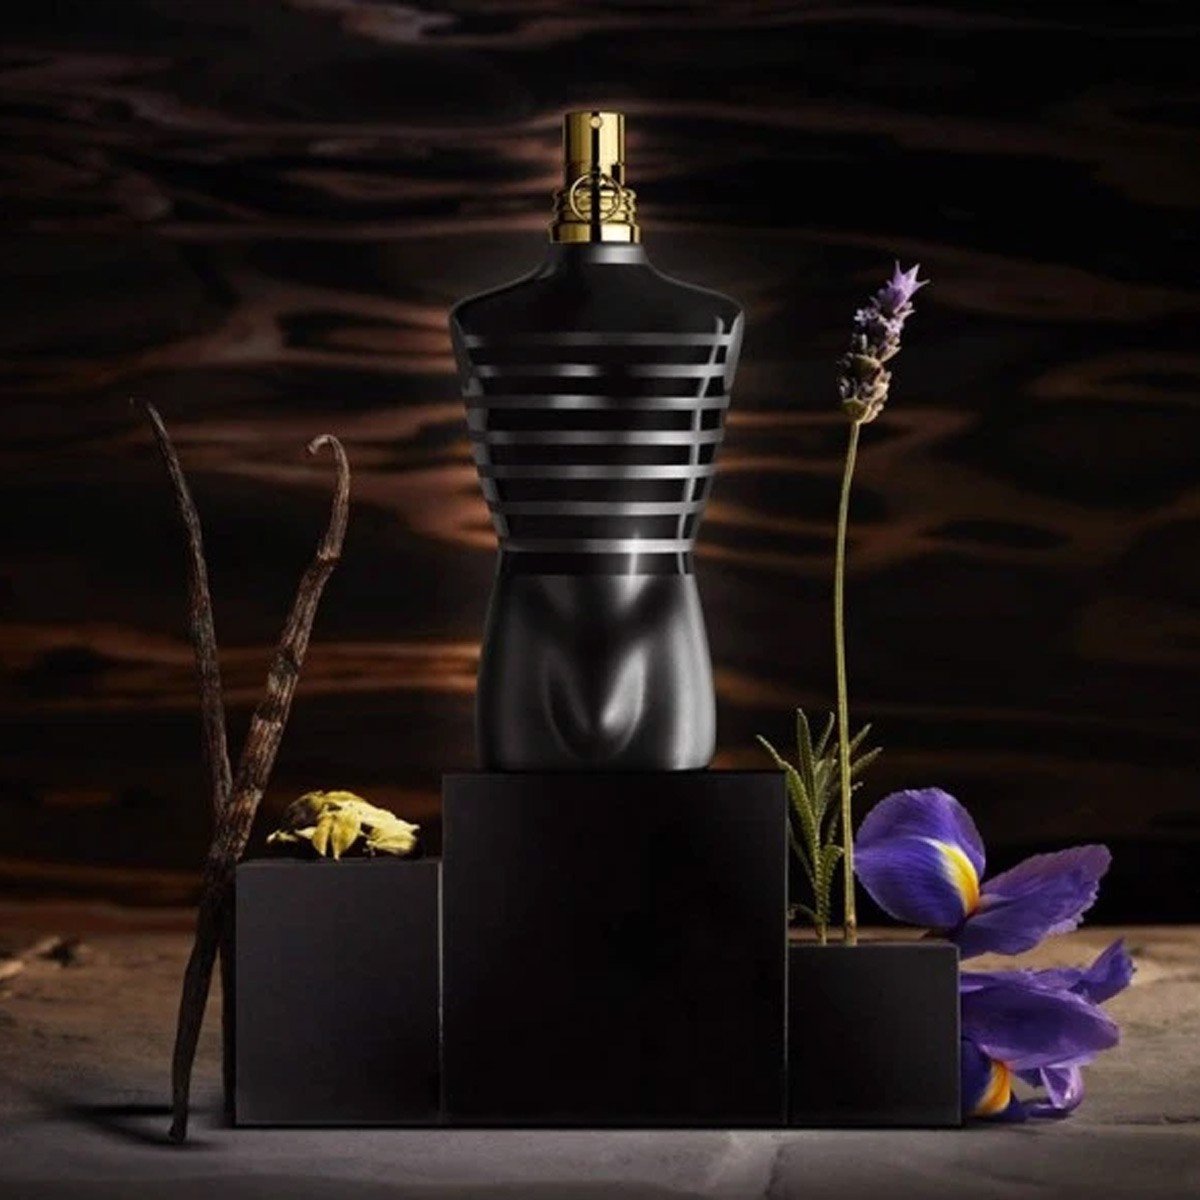 Nước Hoa Jean Paul Gaultier Le Male Le Parfum EDP 75ml